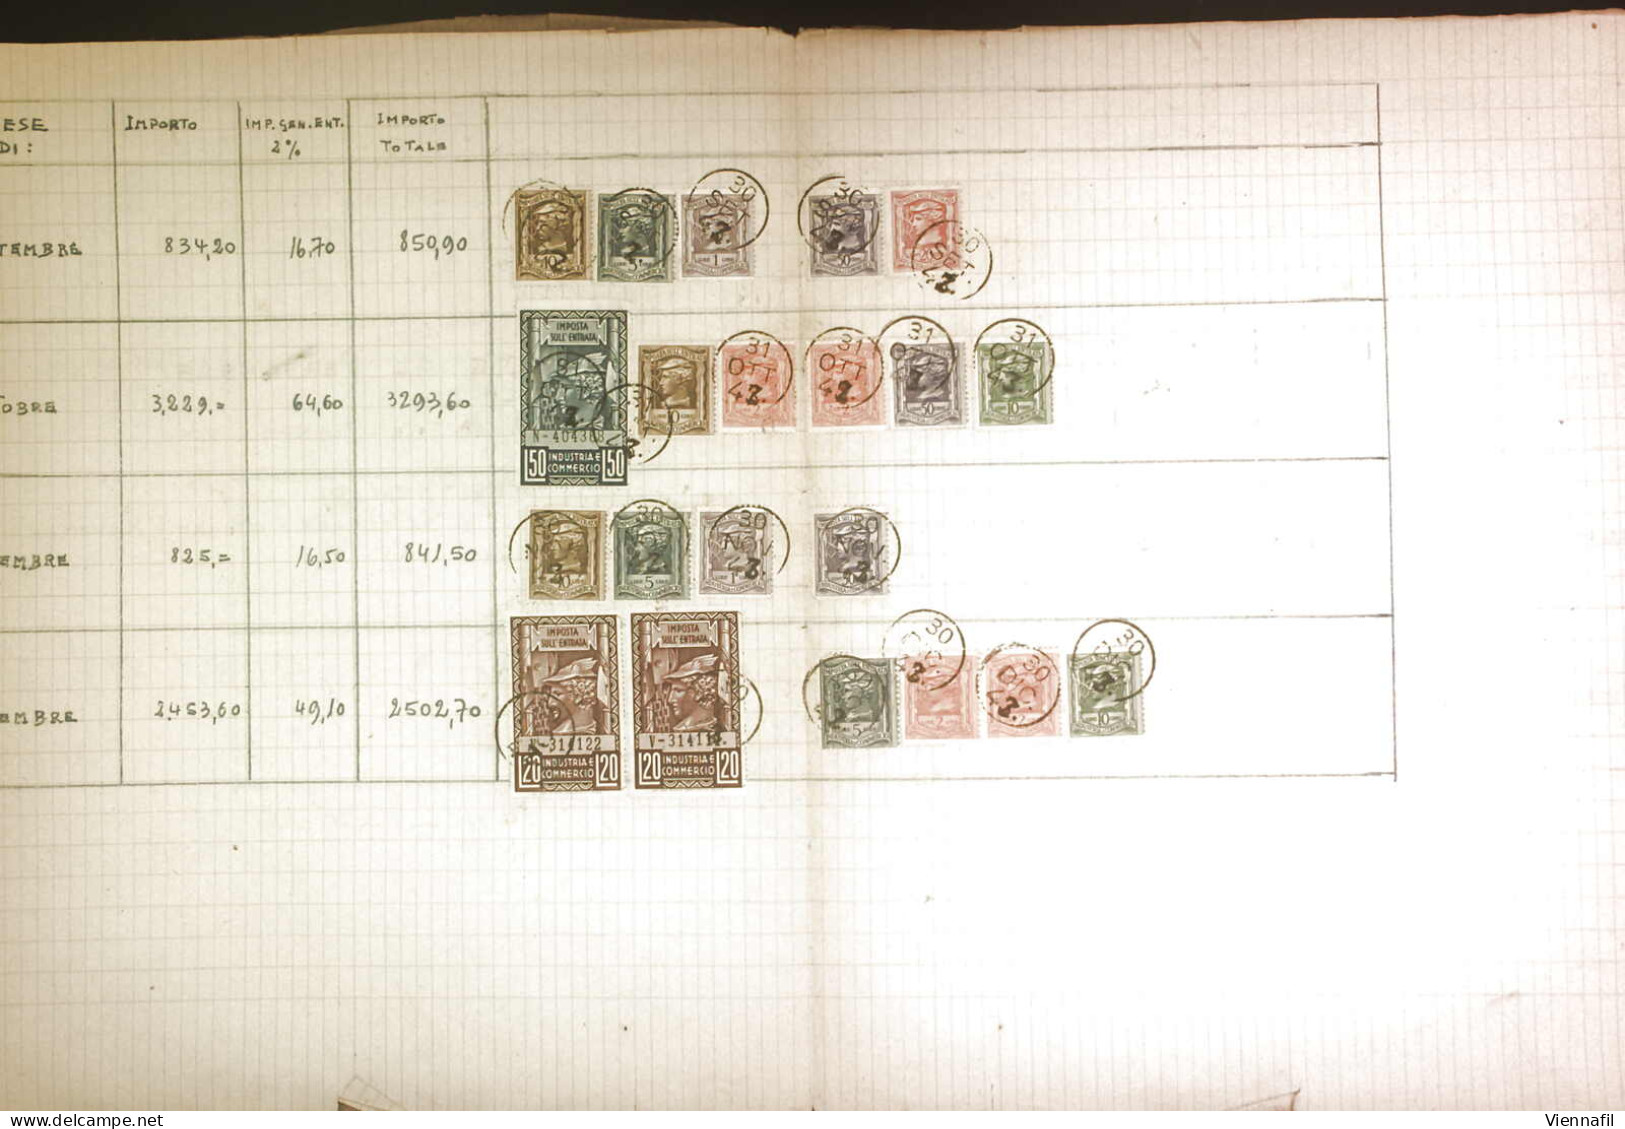 O Regno E Repubblica 1942/52, Registro Vendite Soggette IVA Con 100 Pagine Bollate Con Usi Multipli E Miste Di Marche Da - Colecciones